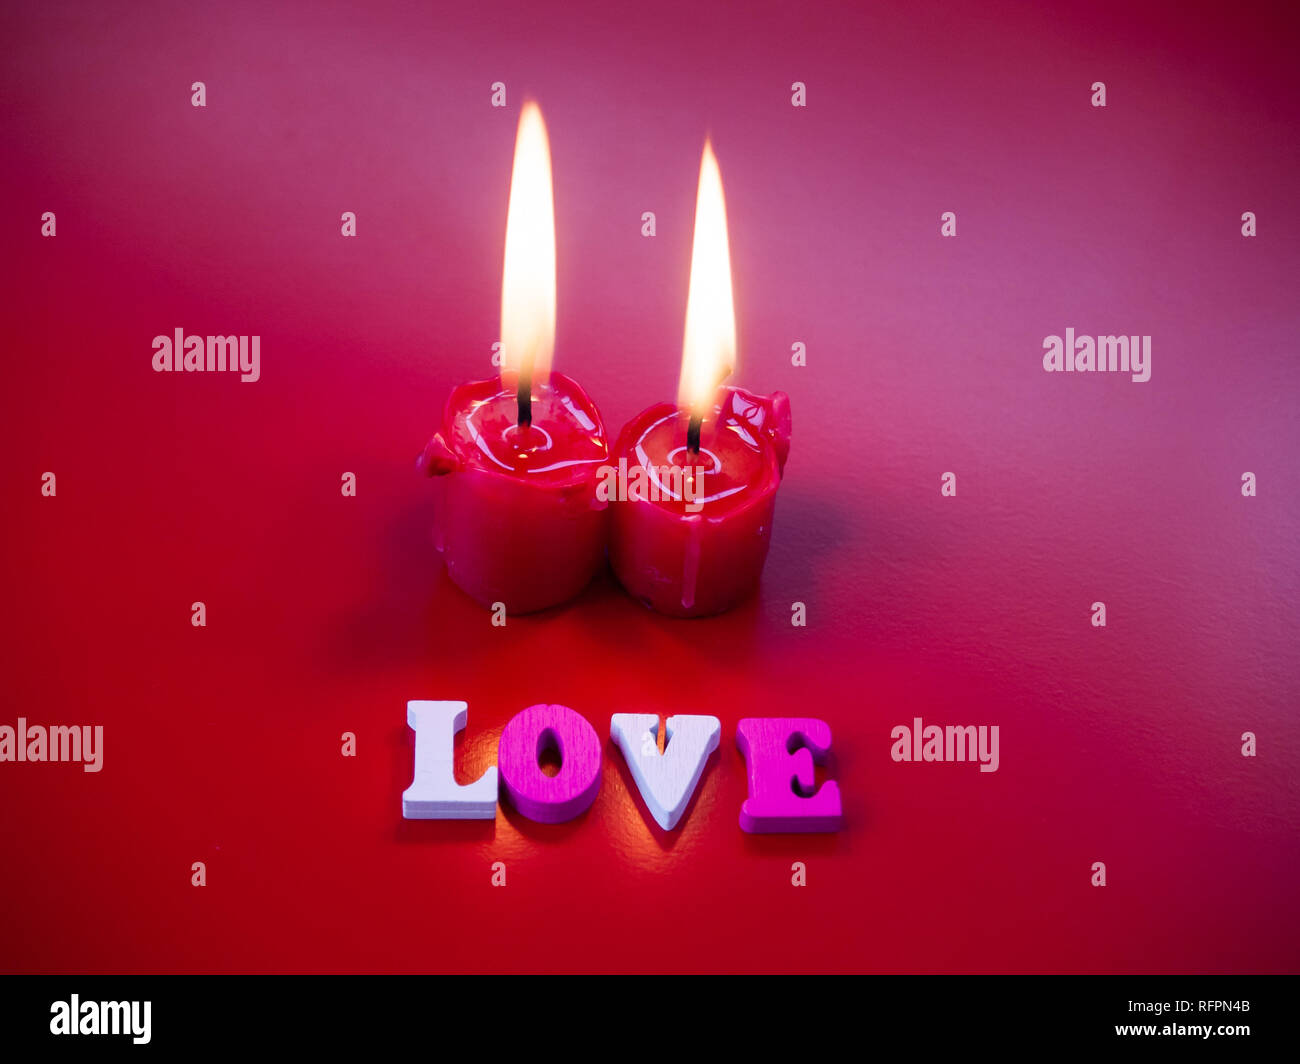 Concetto di amore candele rosse accese e la parola amore con uno sfondo rosso Foto Stock